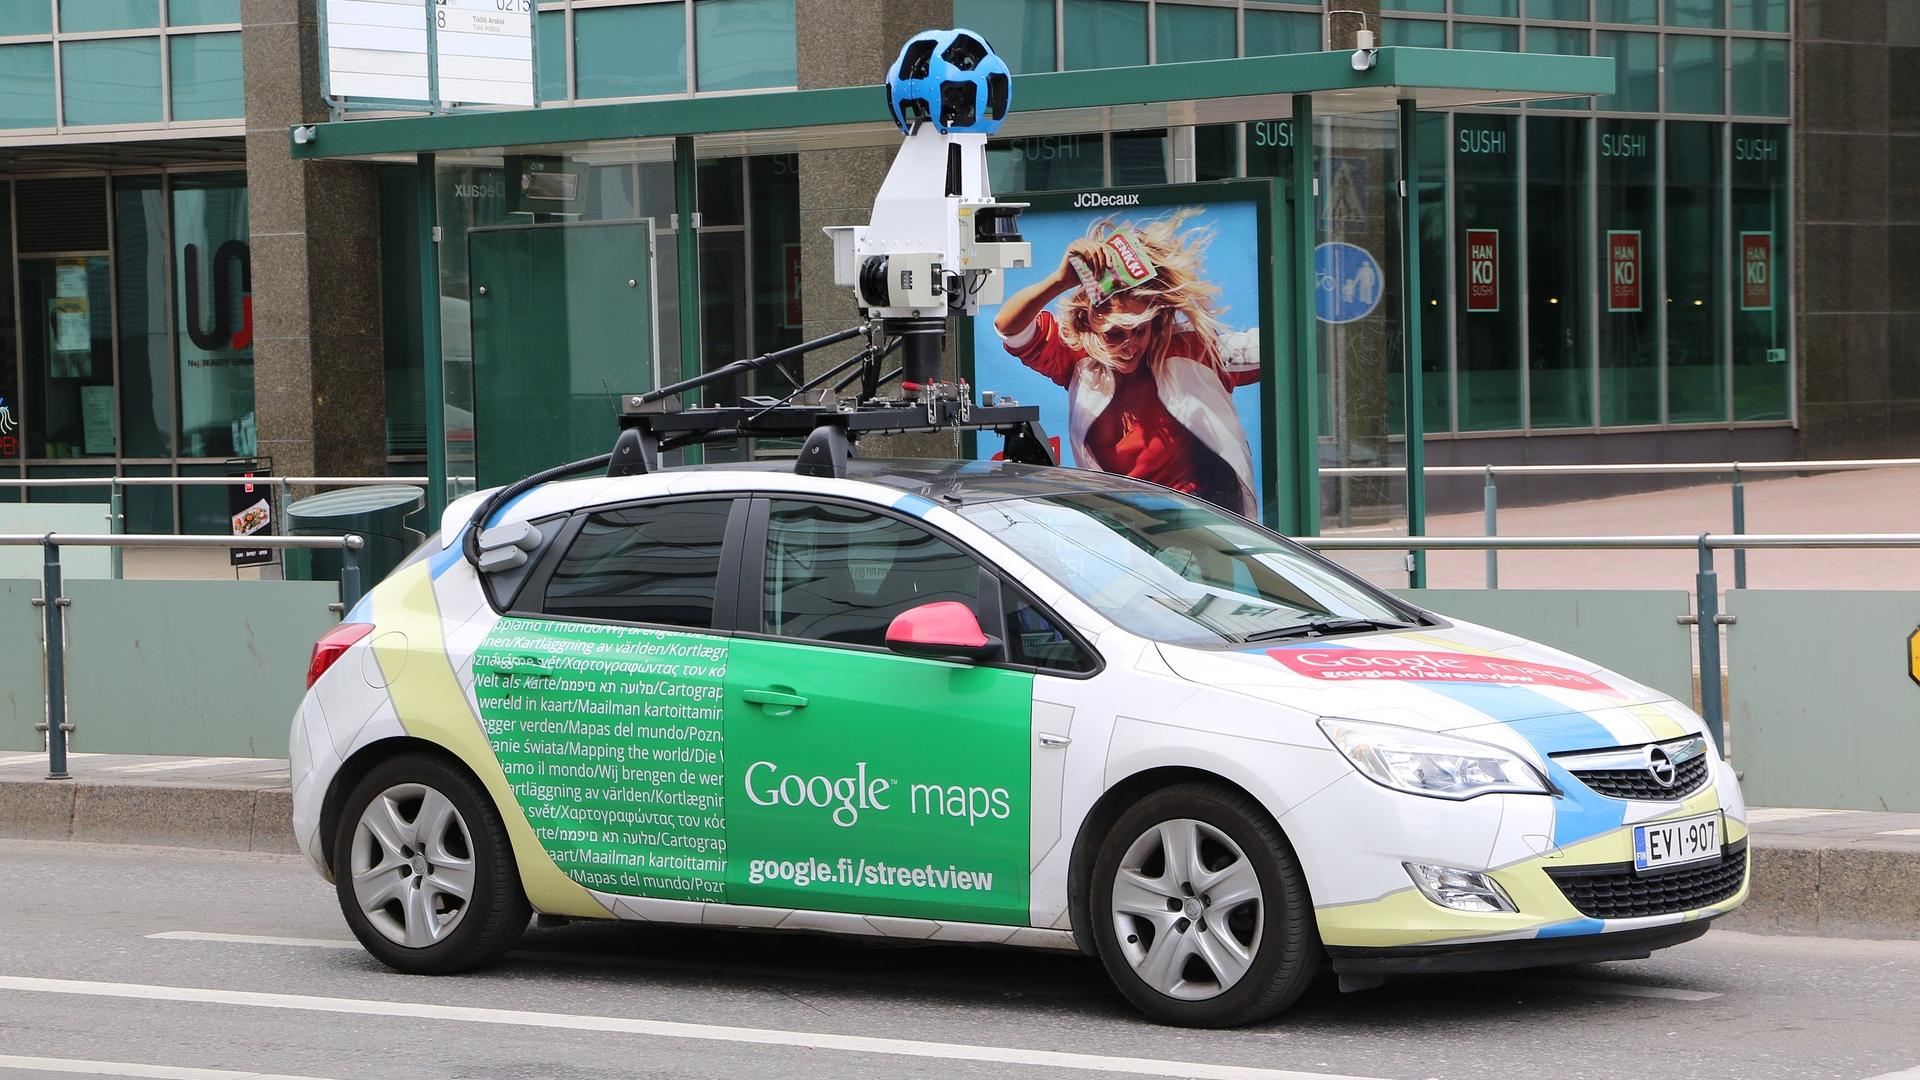 Samochód Google Street View w Lublinie! Nowe zdjęcia